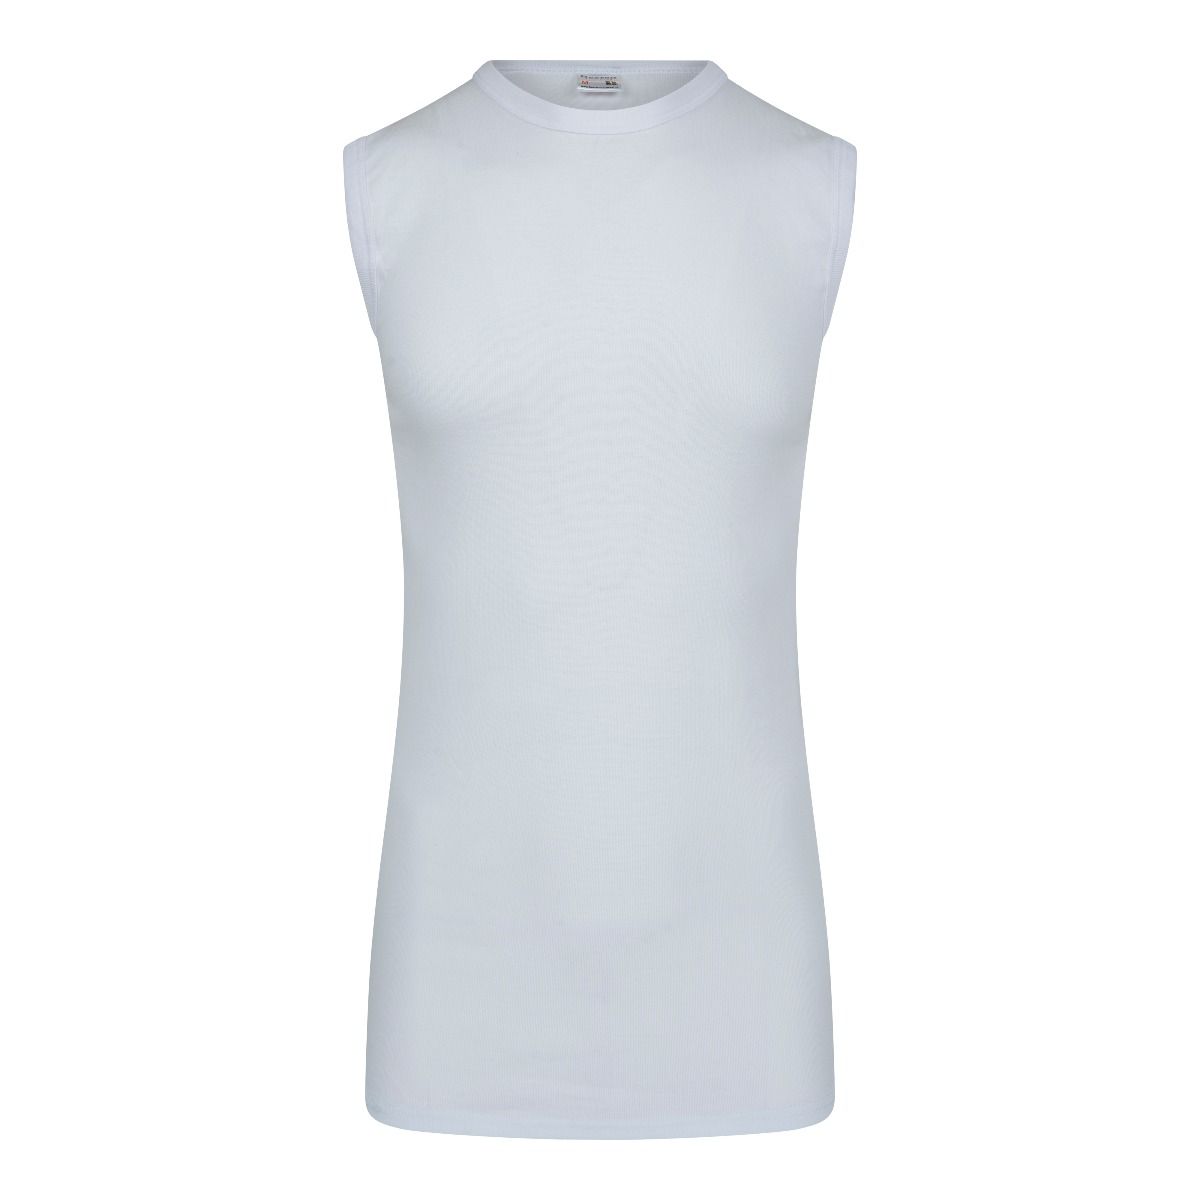 Komst Discrimineren lelijk Beeren extra lang mouwloos T-Shirt wit met ronde hals van 100% katoen